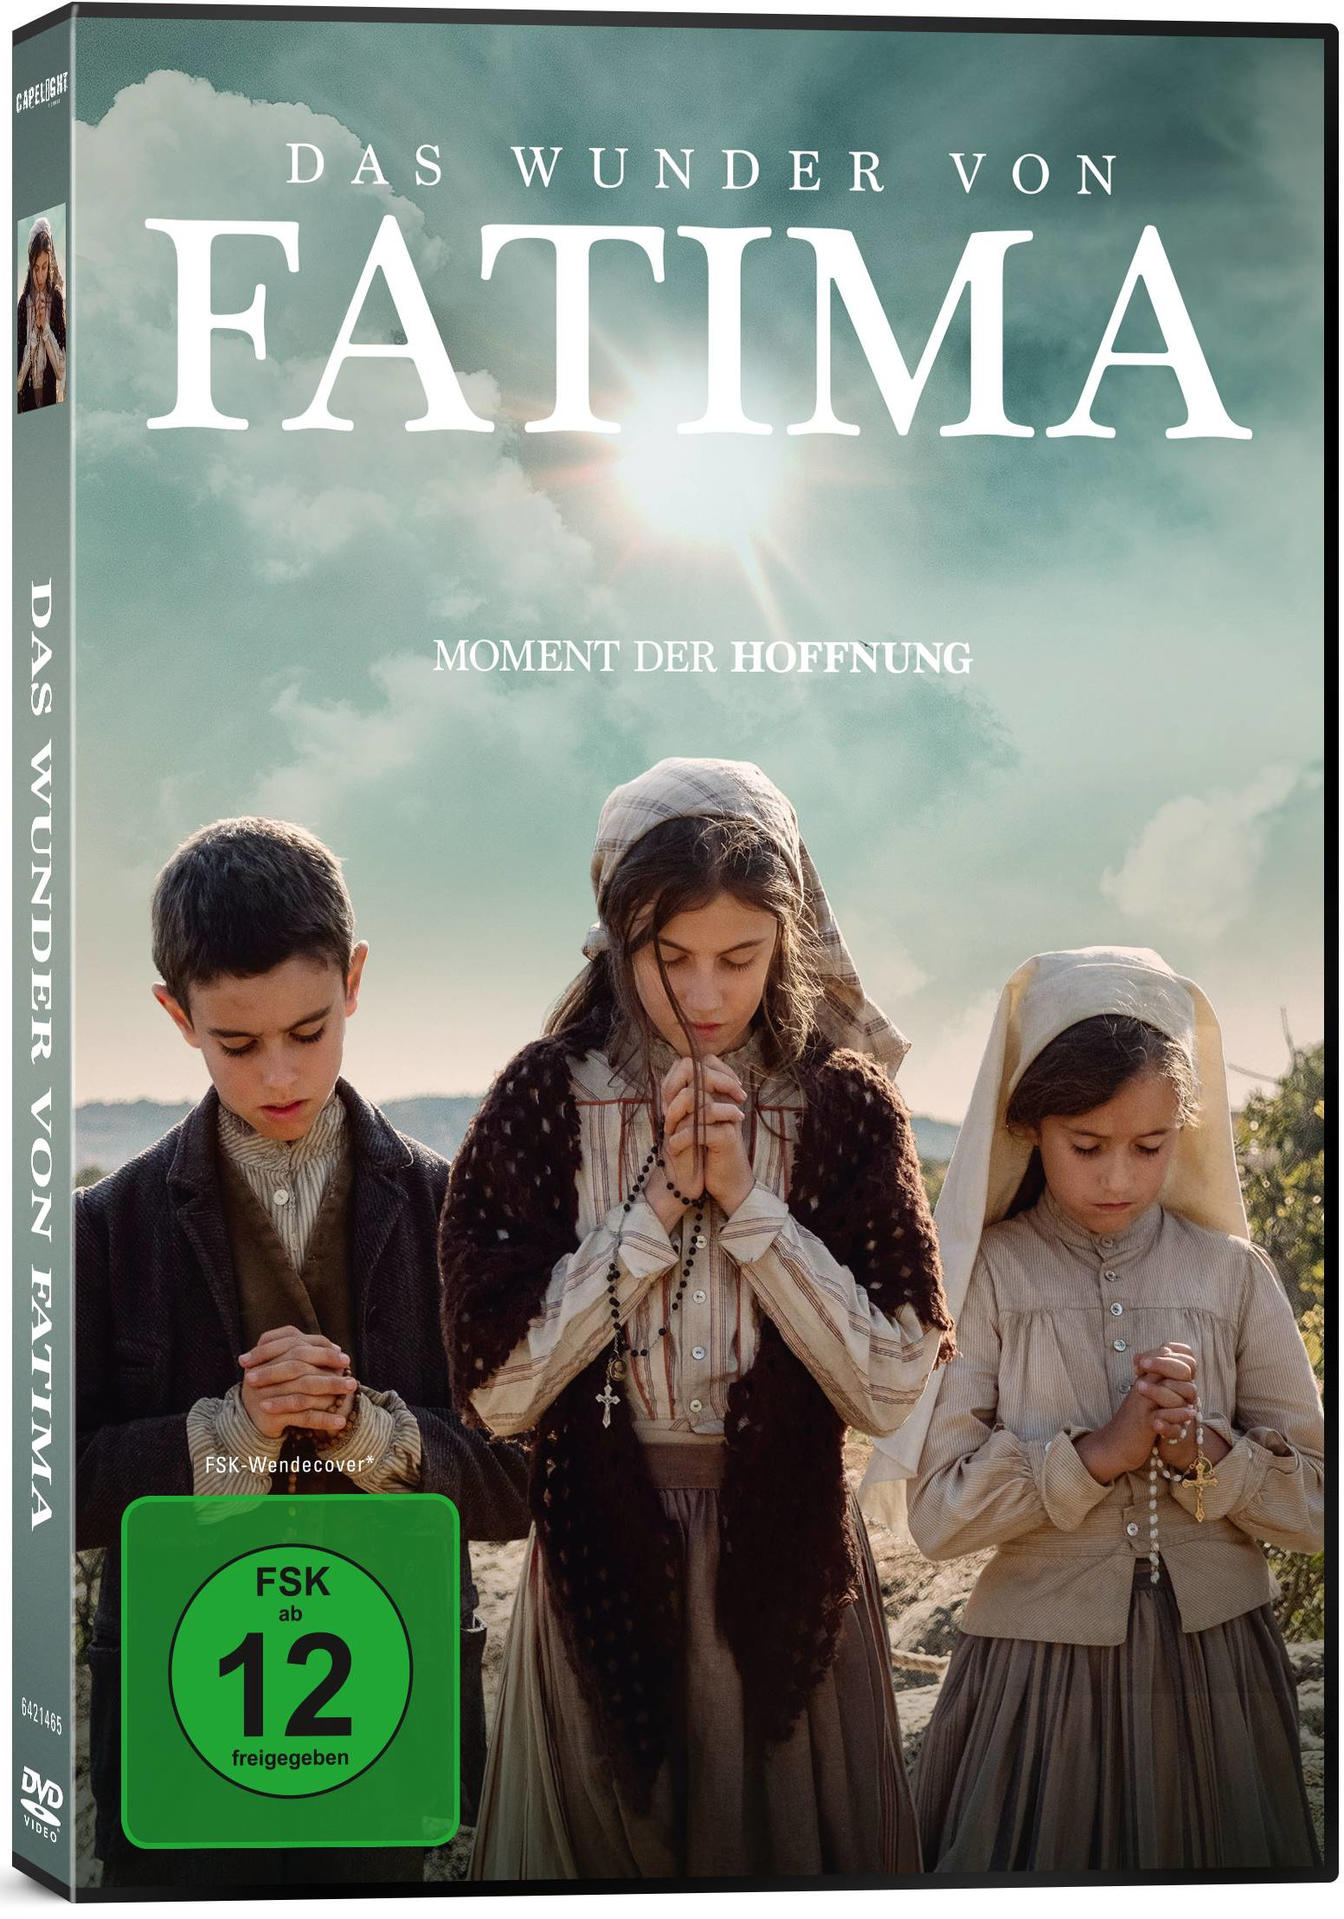 Fatima von DVD Wunder Das